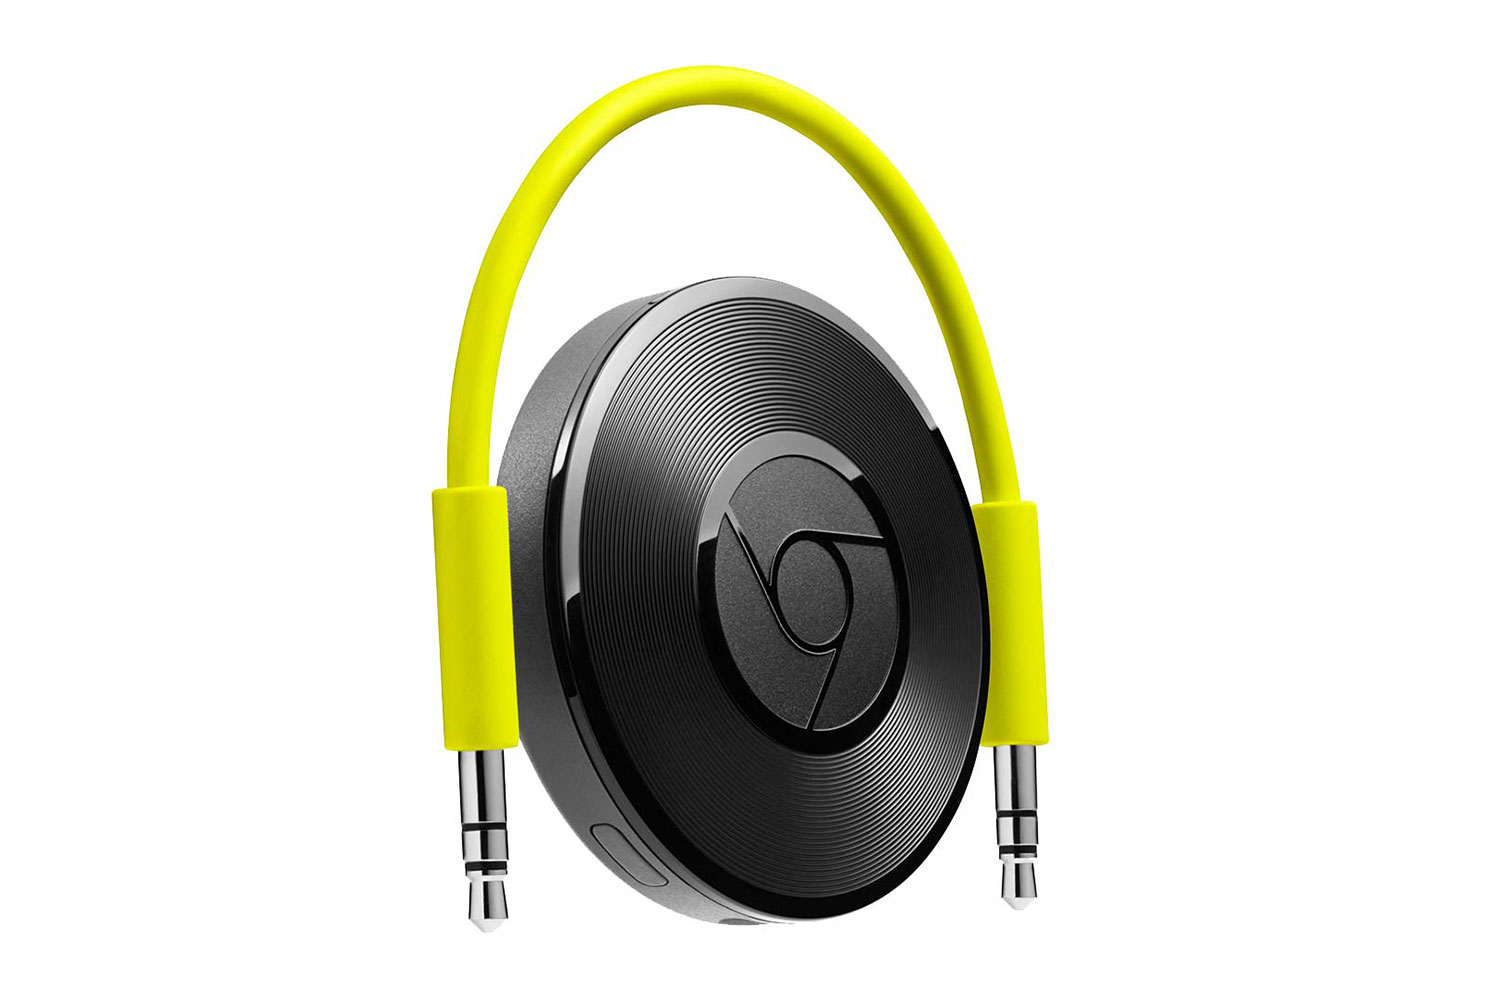 chromecast audio mutliroom wifi device existing speakers google buy now